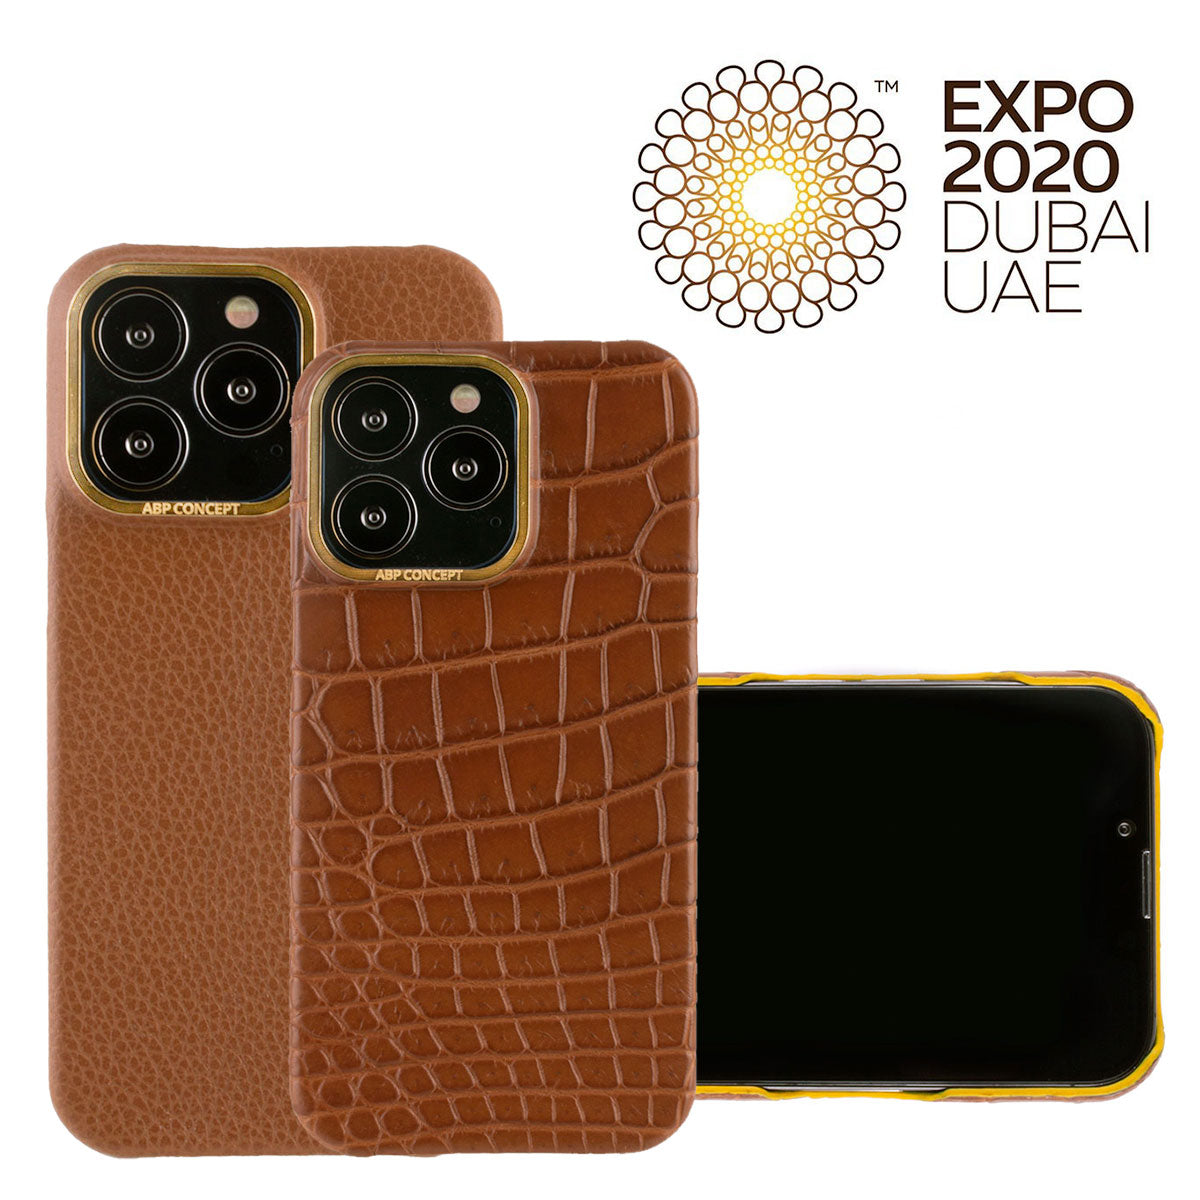 Hommage à l'Expo 2020 Dubai - Coque cuir pour iPhone 13 et 12